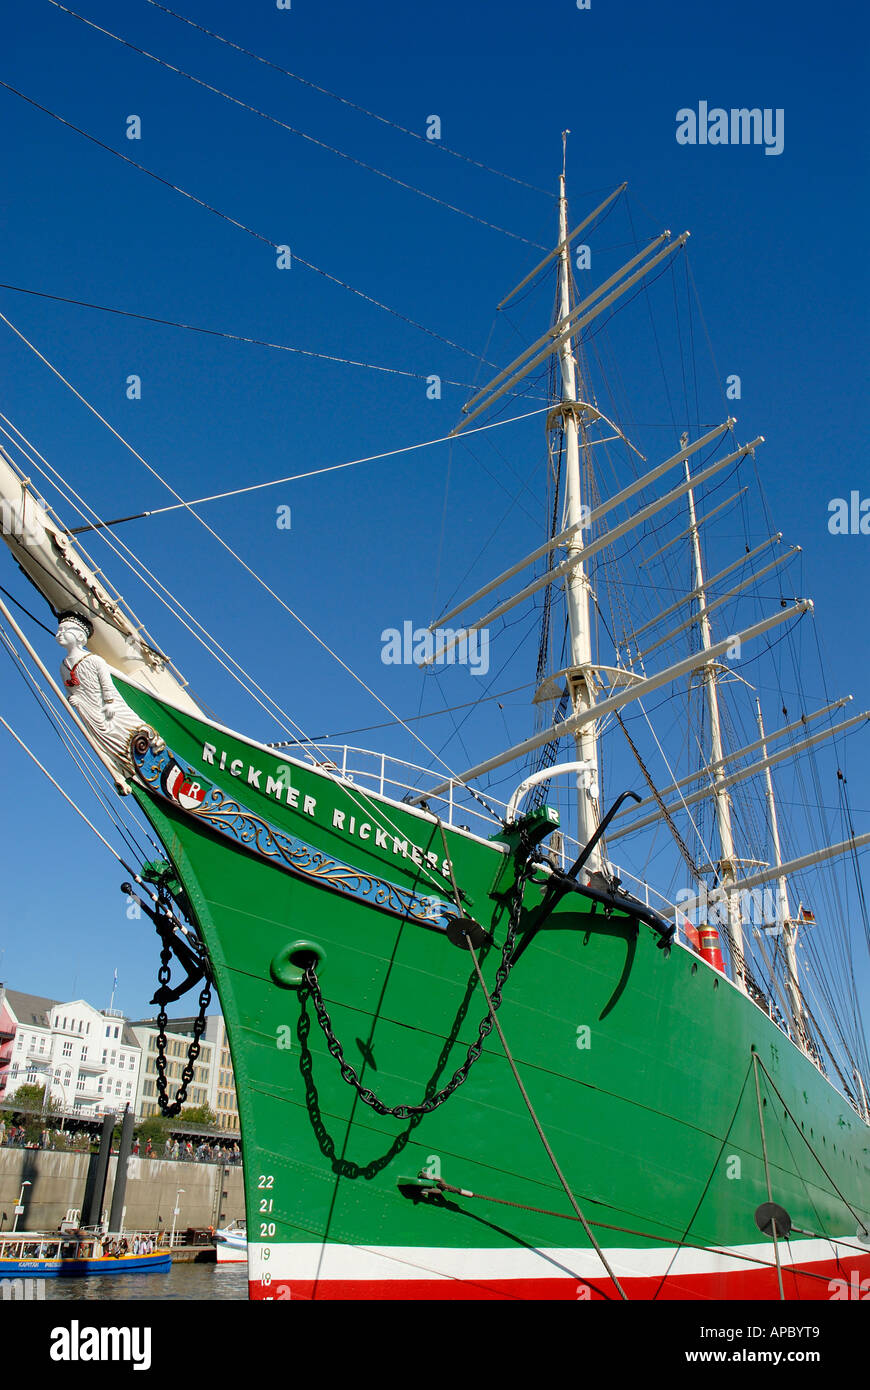 Arco storico della nave a vela Rickmer Rickmers al porto di Amburgo, Amburgo, Germania Foto Stock